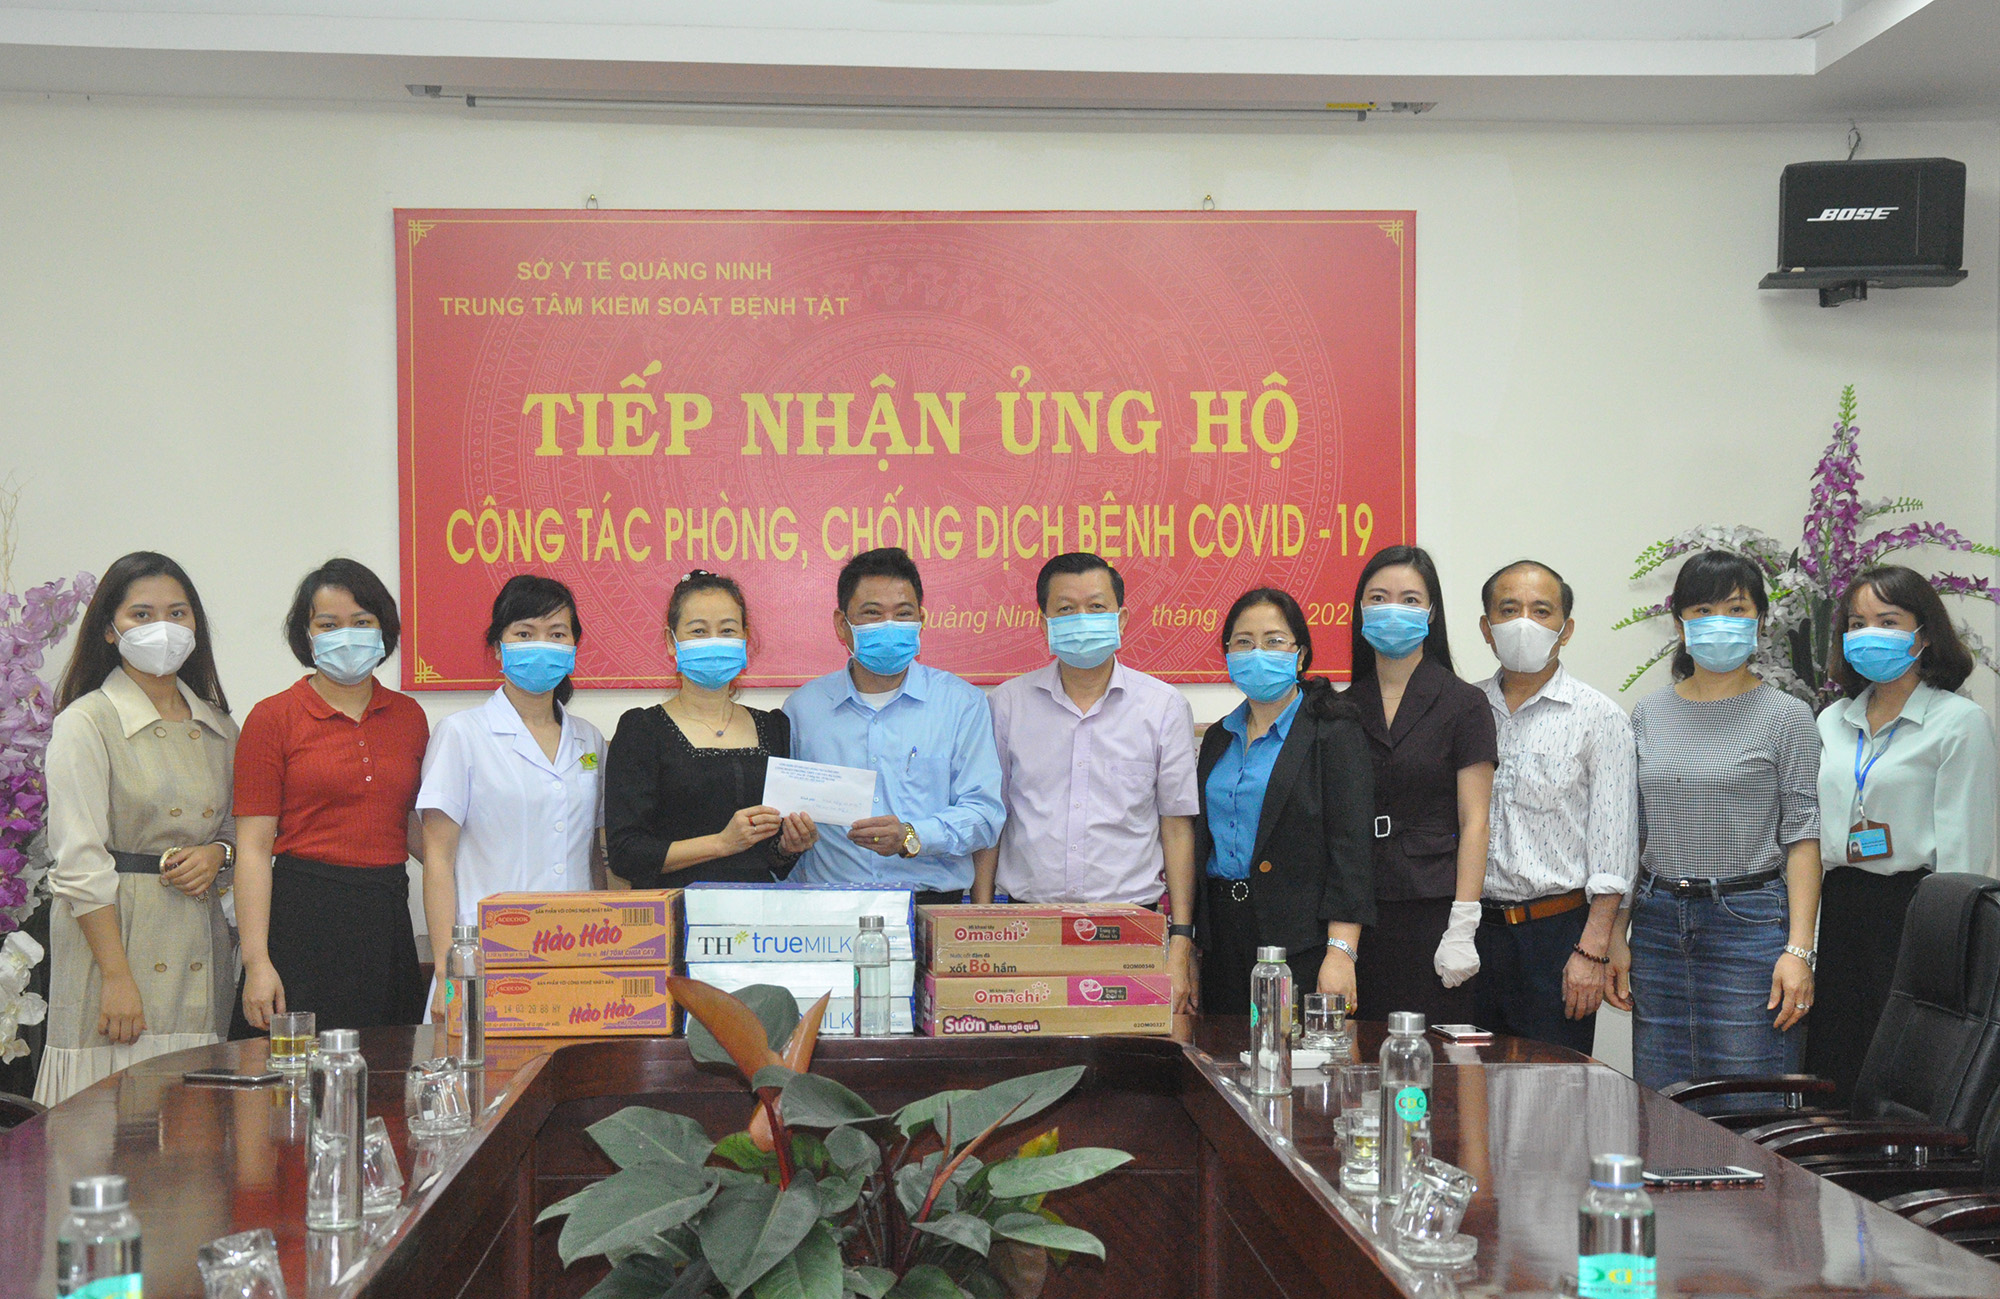 Trường THPT Chuyên Hạ Long trao hỗ trợ gồm tiền mặt và các nhu yếu phẩm cho các y bác sĩ Trung tâm Kiểm soát bệnh tật tỉnh.